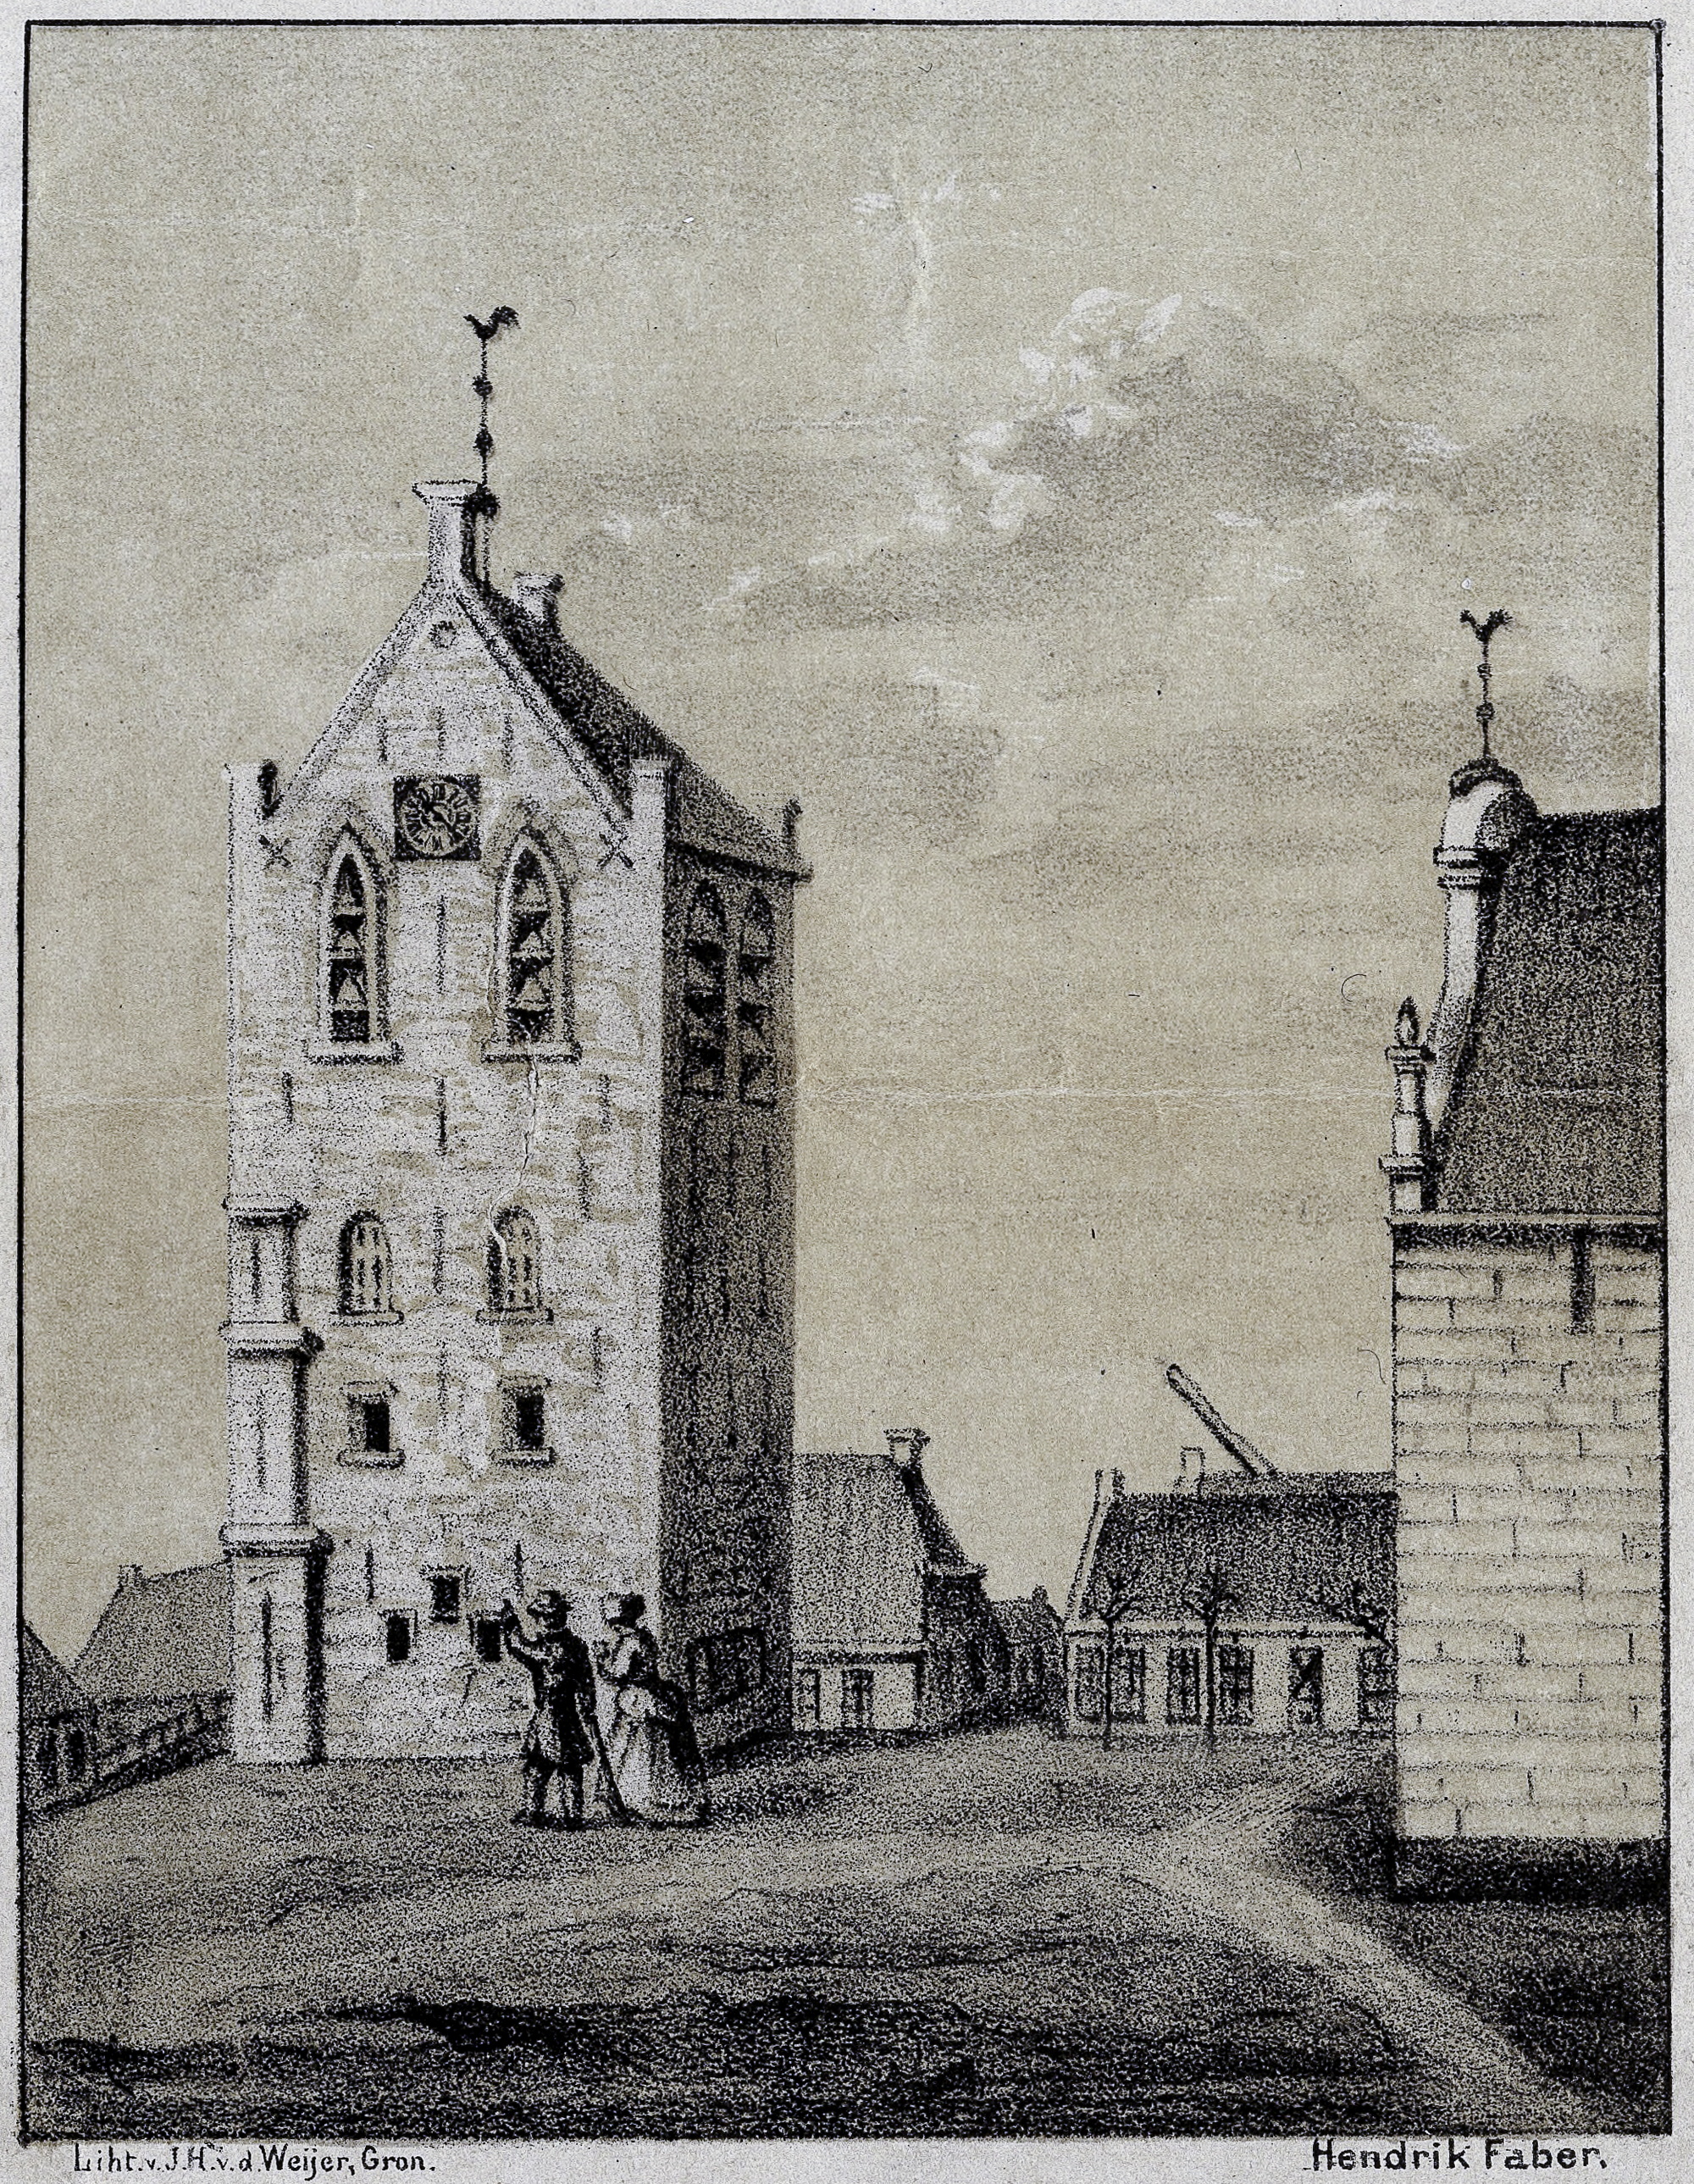 Op deze oude tekening kunnen we de losstaande toren van Usquert nog zien. Links onder de tekening staat: Liht v. J.H. v.d. Weijer, Groningen en rechts Hendrik Faber. De laatste lijkt de tekening opnieuw te hebben gemaakt. De oorsponkelijke bron van de tekening is niet bekend.